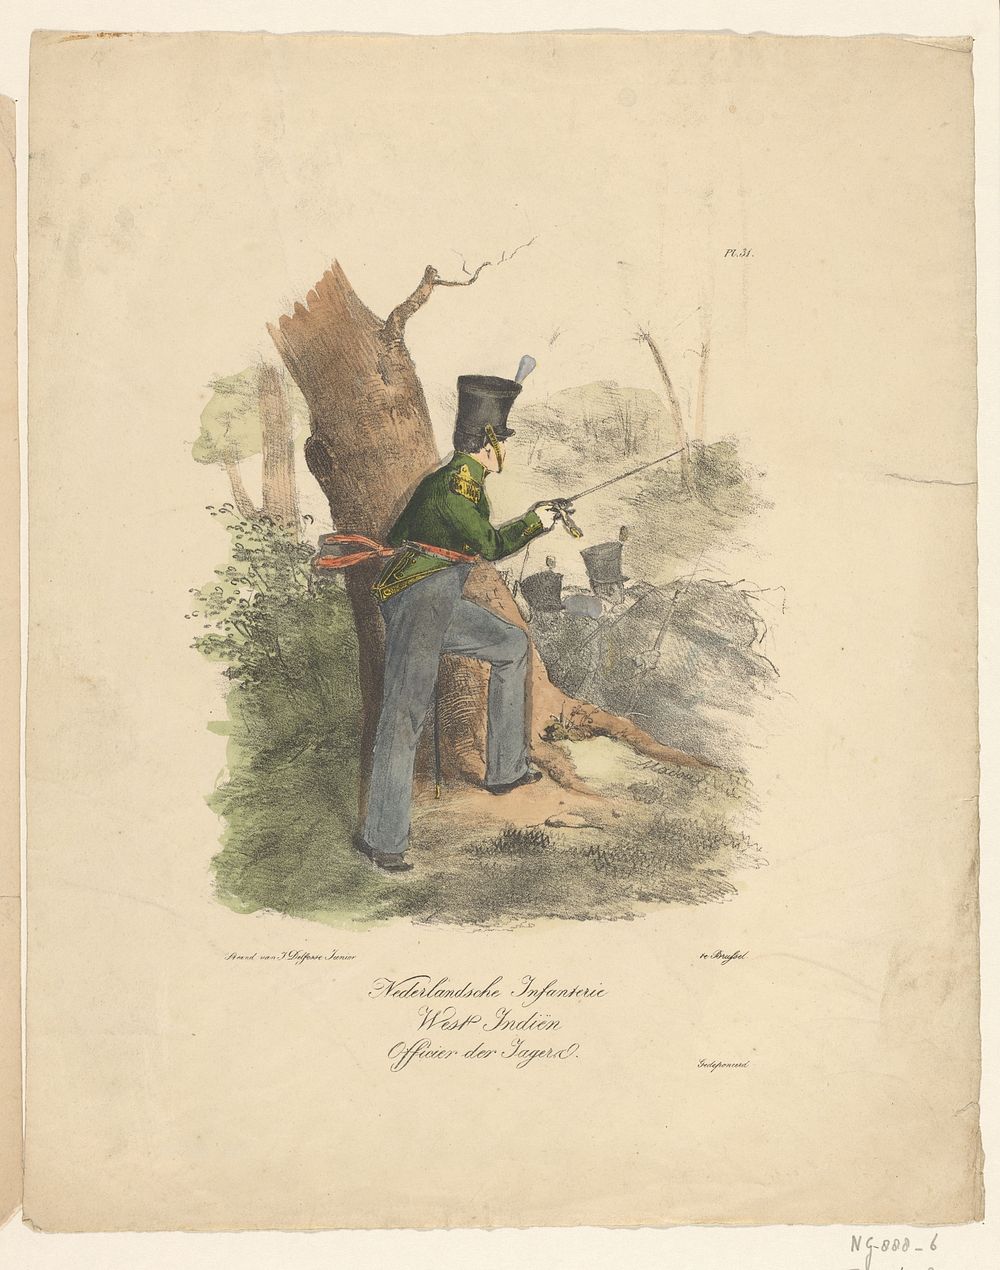 Nederlandsche Infanterie / West Indiën / Officier der Jagers (1823 - 1827) by Jean Baptiste Madou and J Delfosse